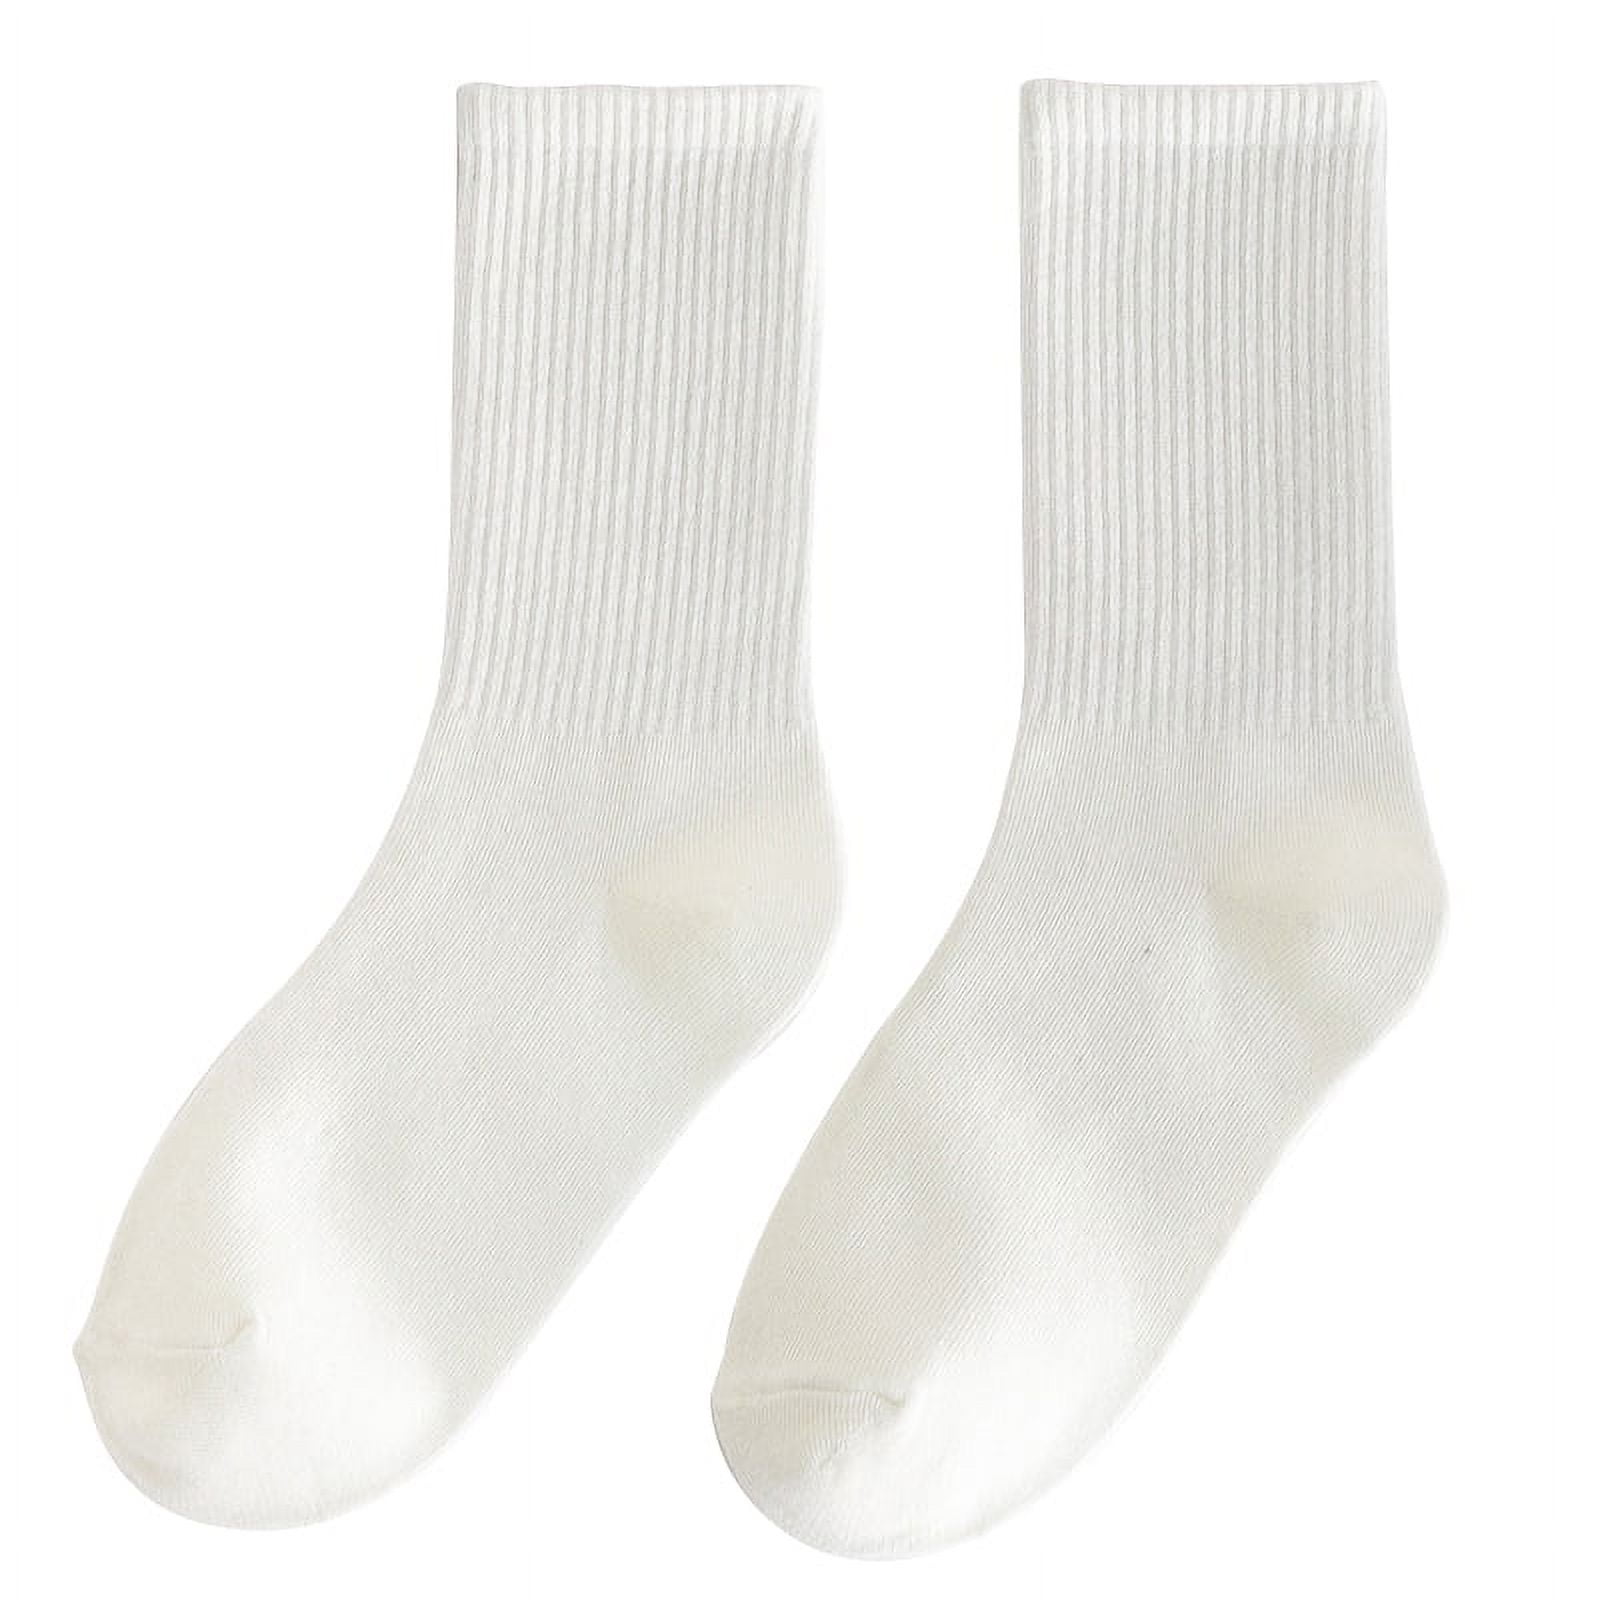 Teen Girls White Cotton Socks For Uniform School Student Girl Crew ...